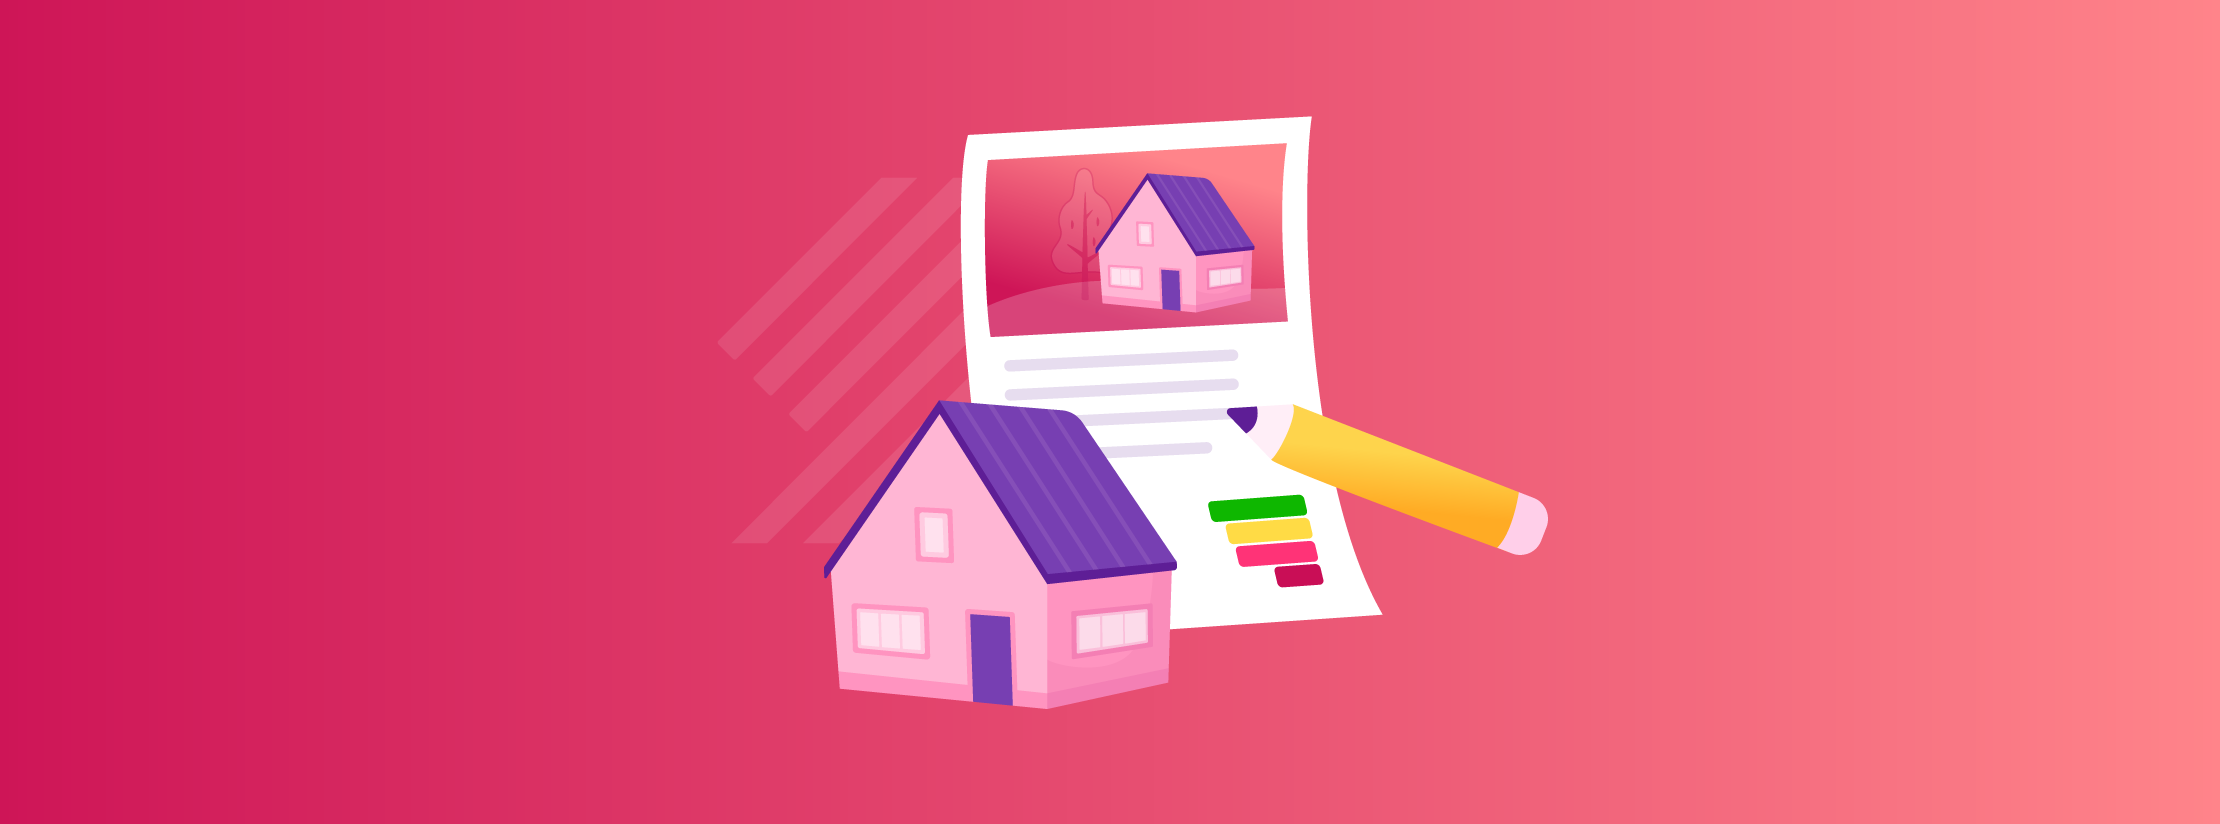 5 conseils pour rédiger vos textes d'annonces immobilières